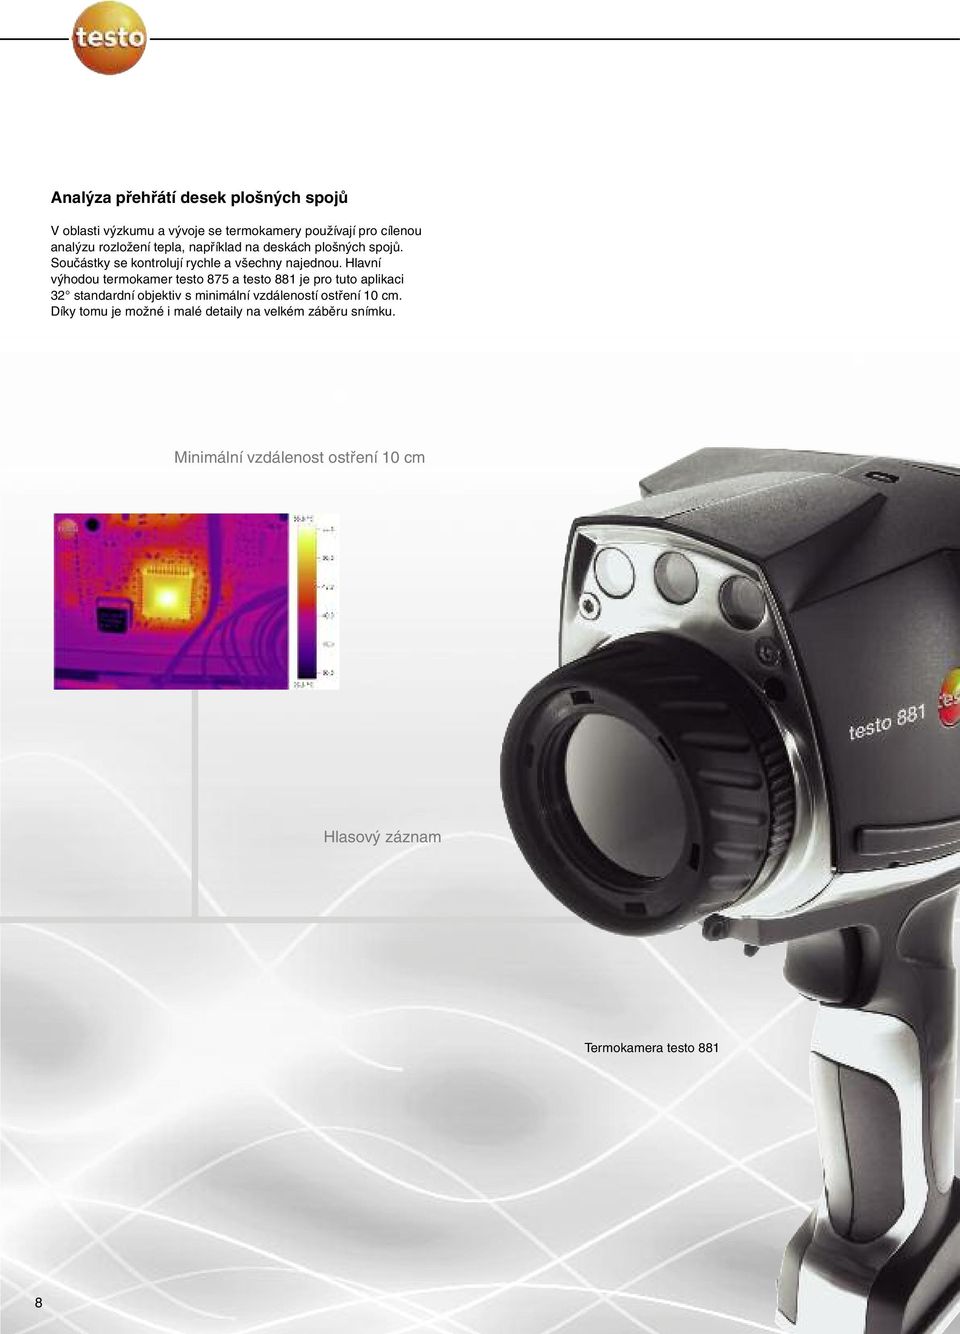 Hlavní výhodou termokamer testo 875 a testo 881 je pro tuto aplikaci 32 standardní objektiv s minimální vzdáleností